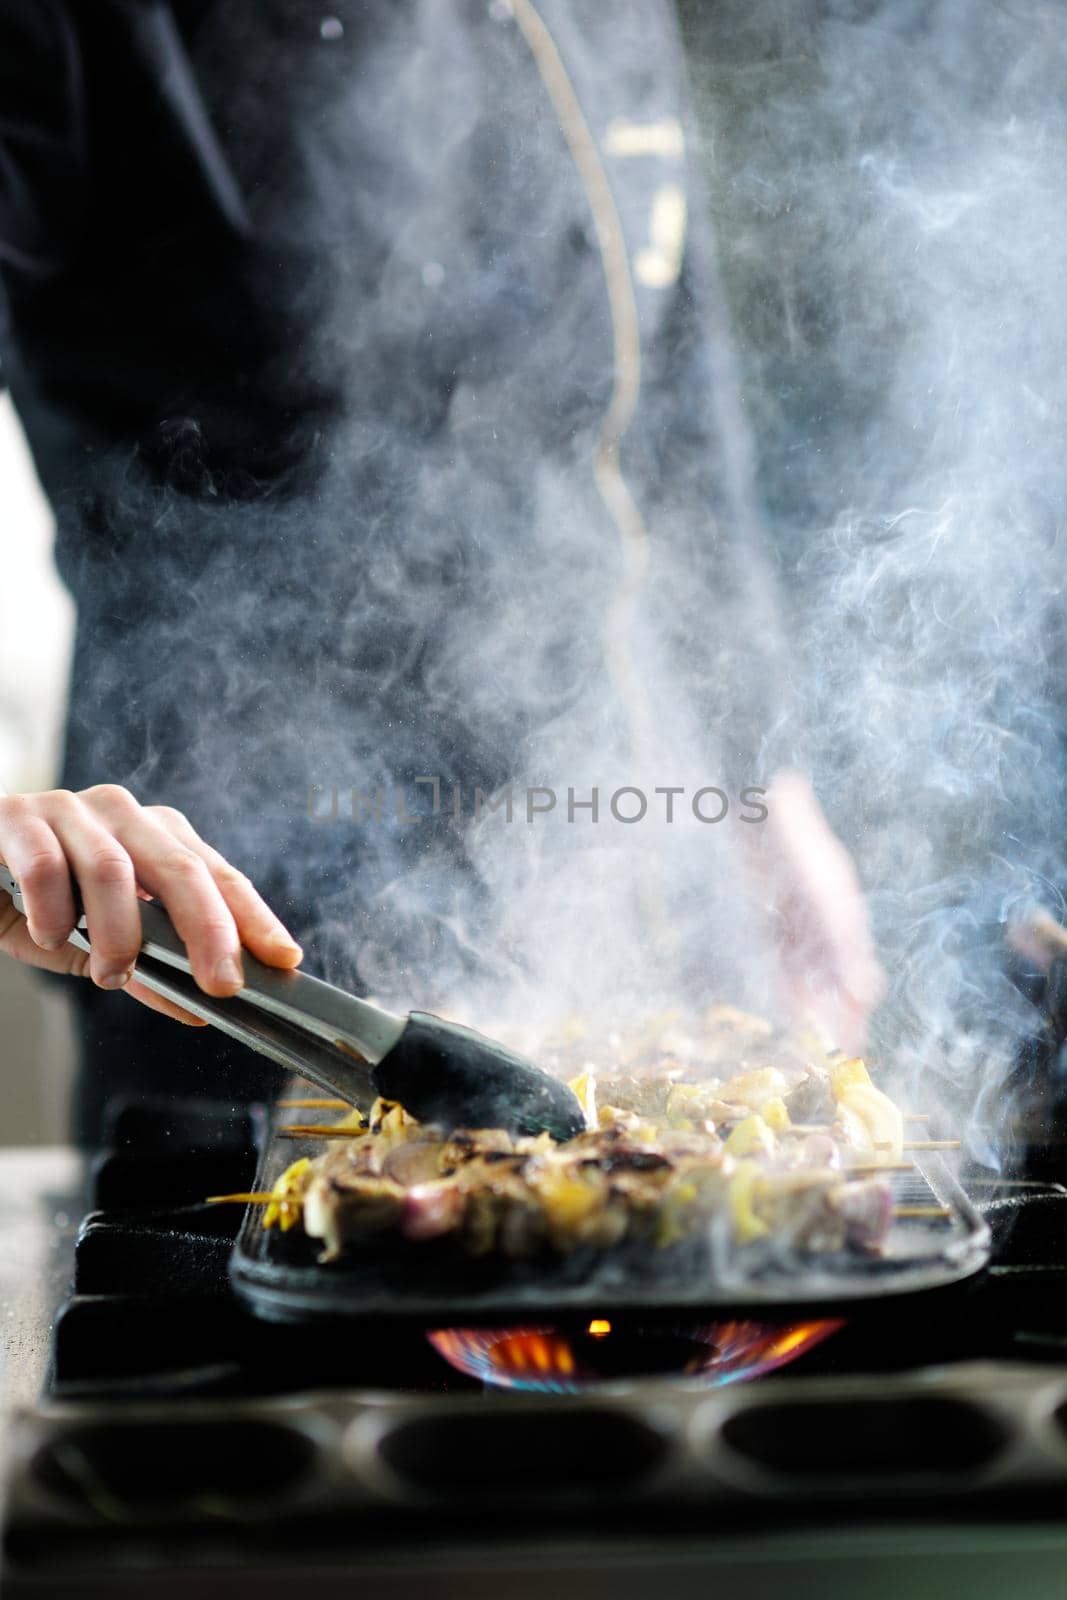 chef preparing meal by dotshock